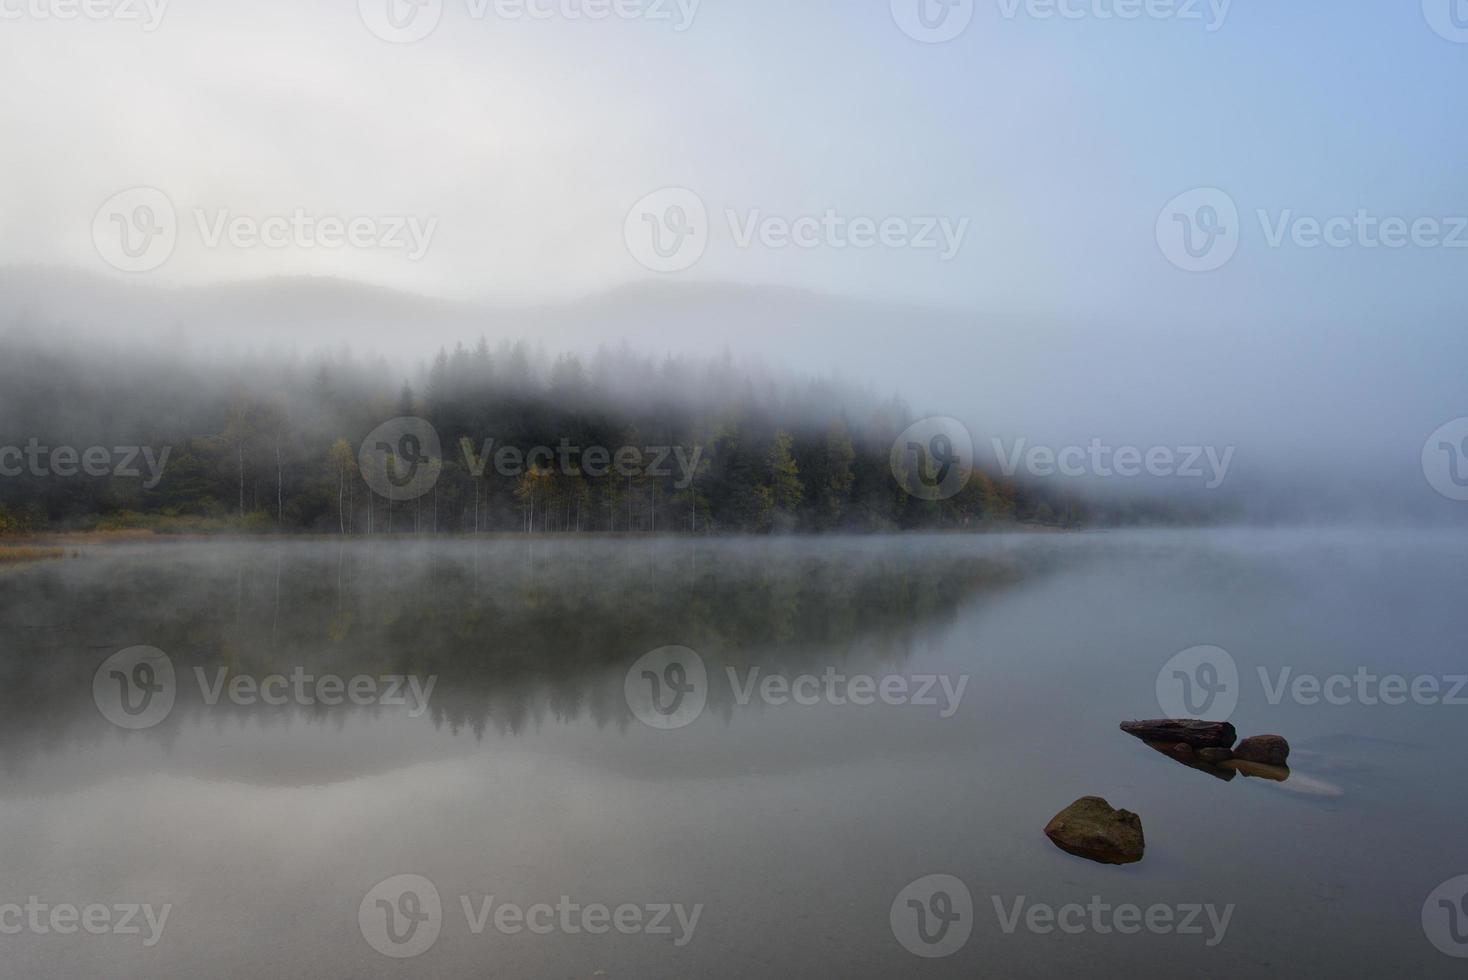 Paysage d'automne dans les montagnes avec des arbres se reflétant dans l'eau au lac de st ana roumanie photo